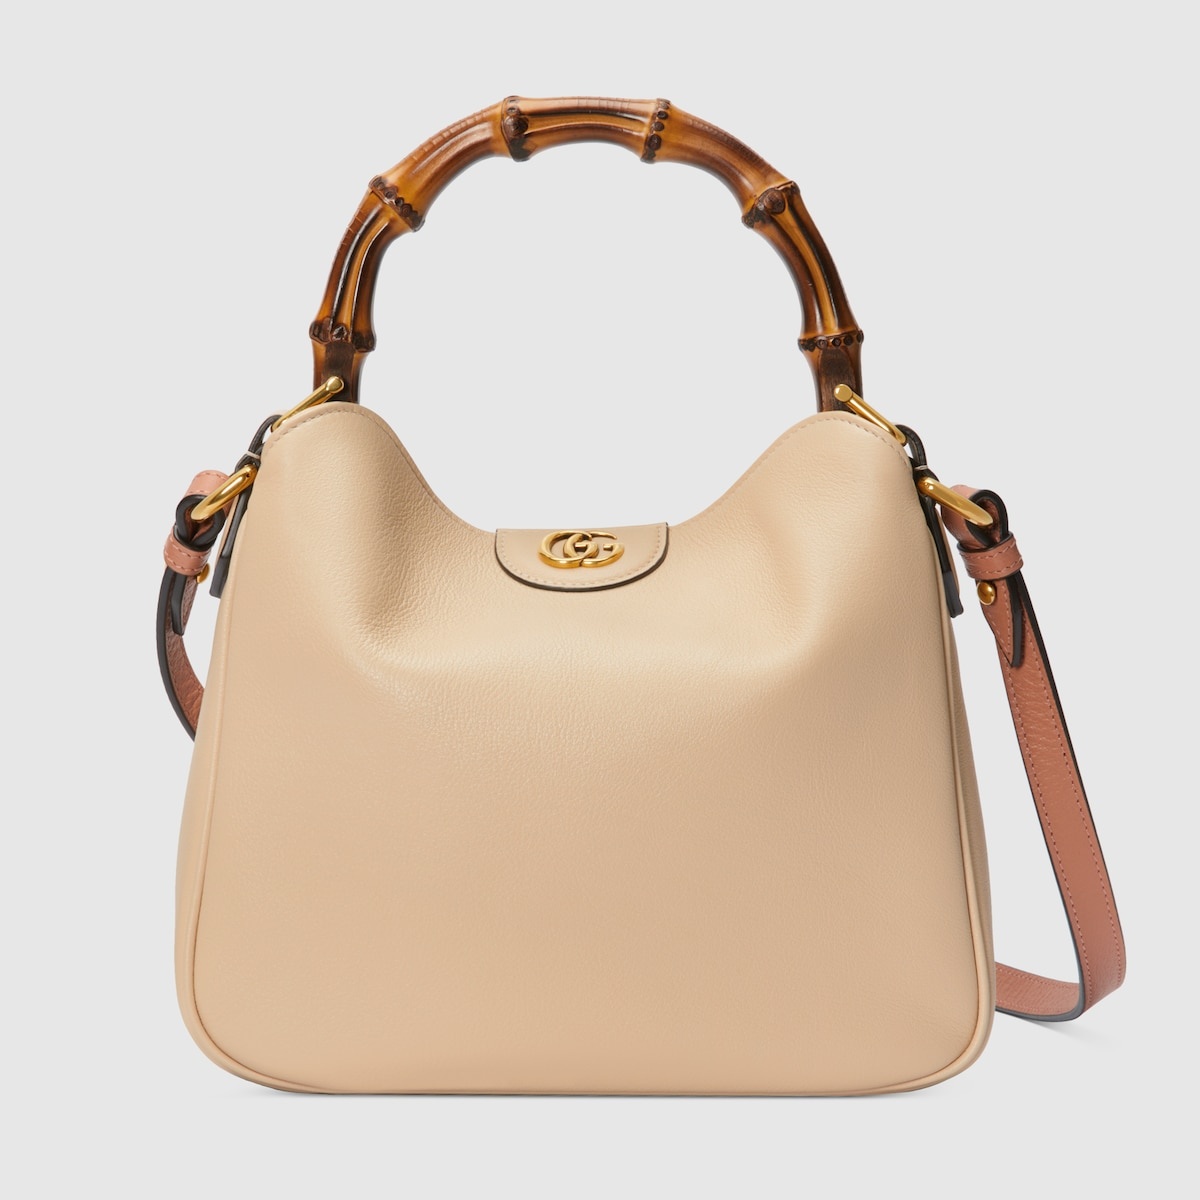 Gucci Diana small shoulder bag - 1